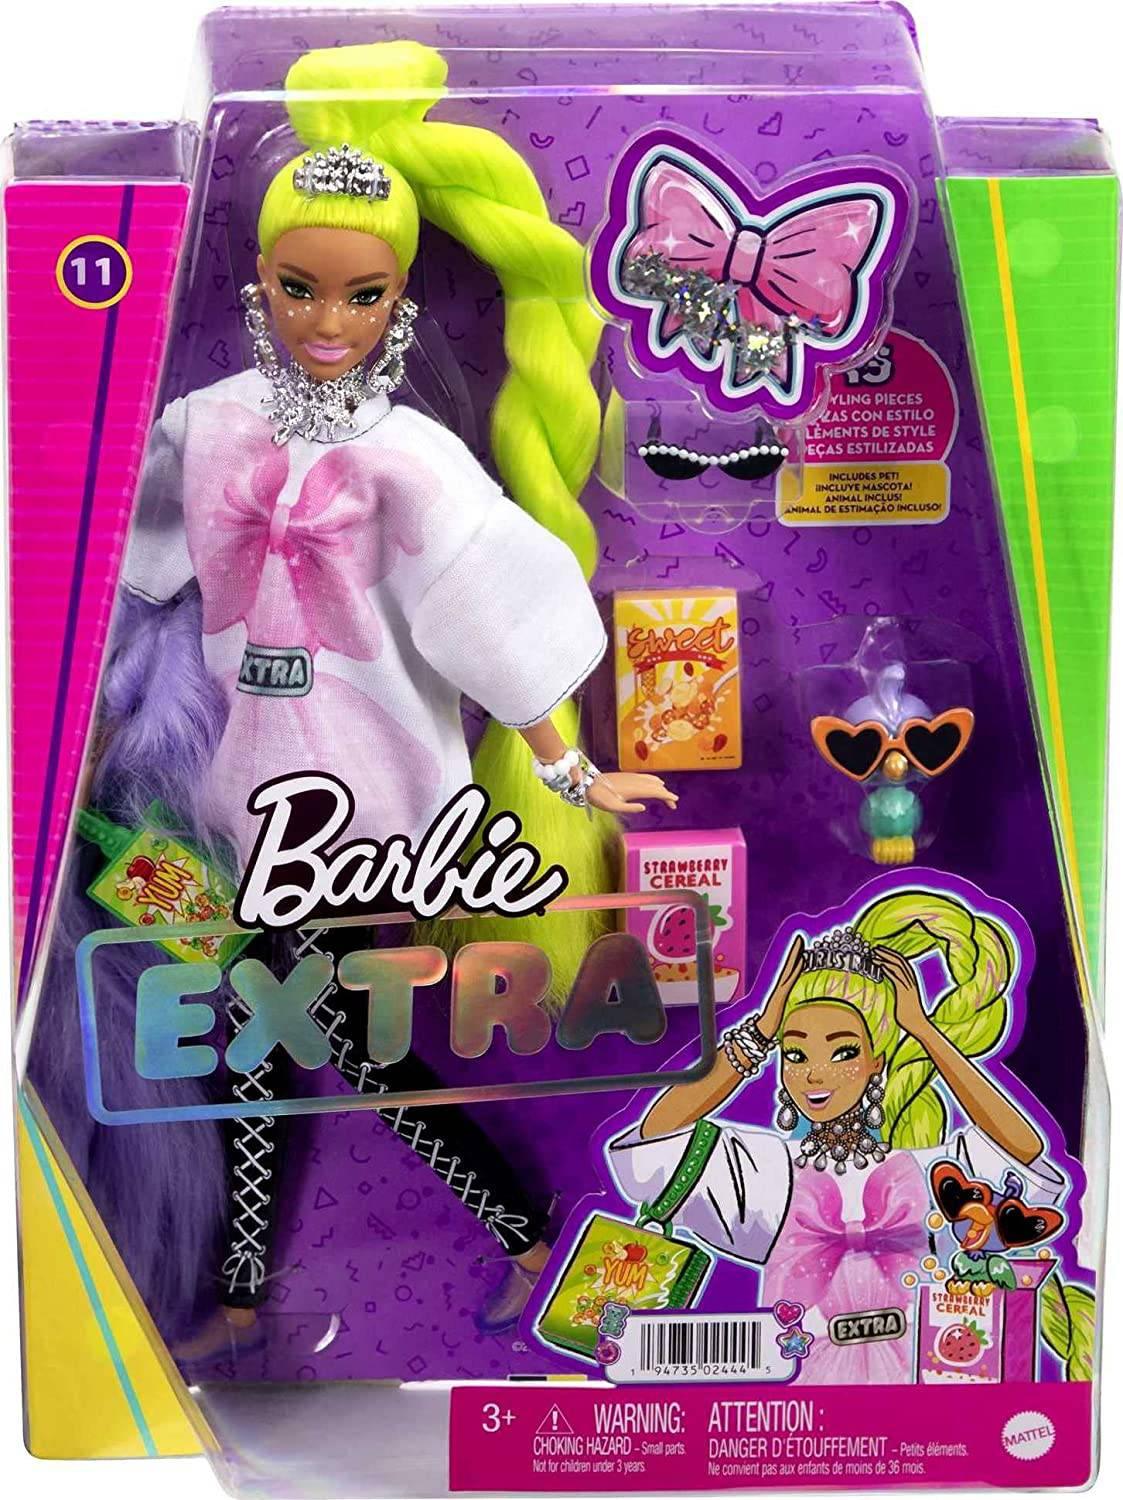 Barbie Extra Fashions HDJ39